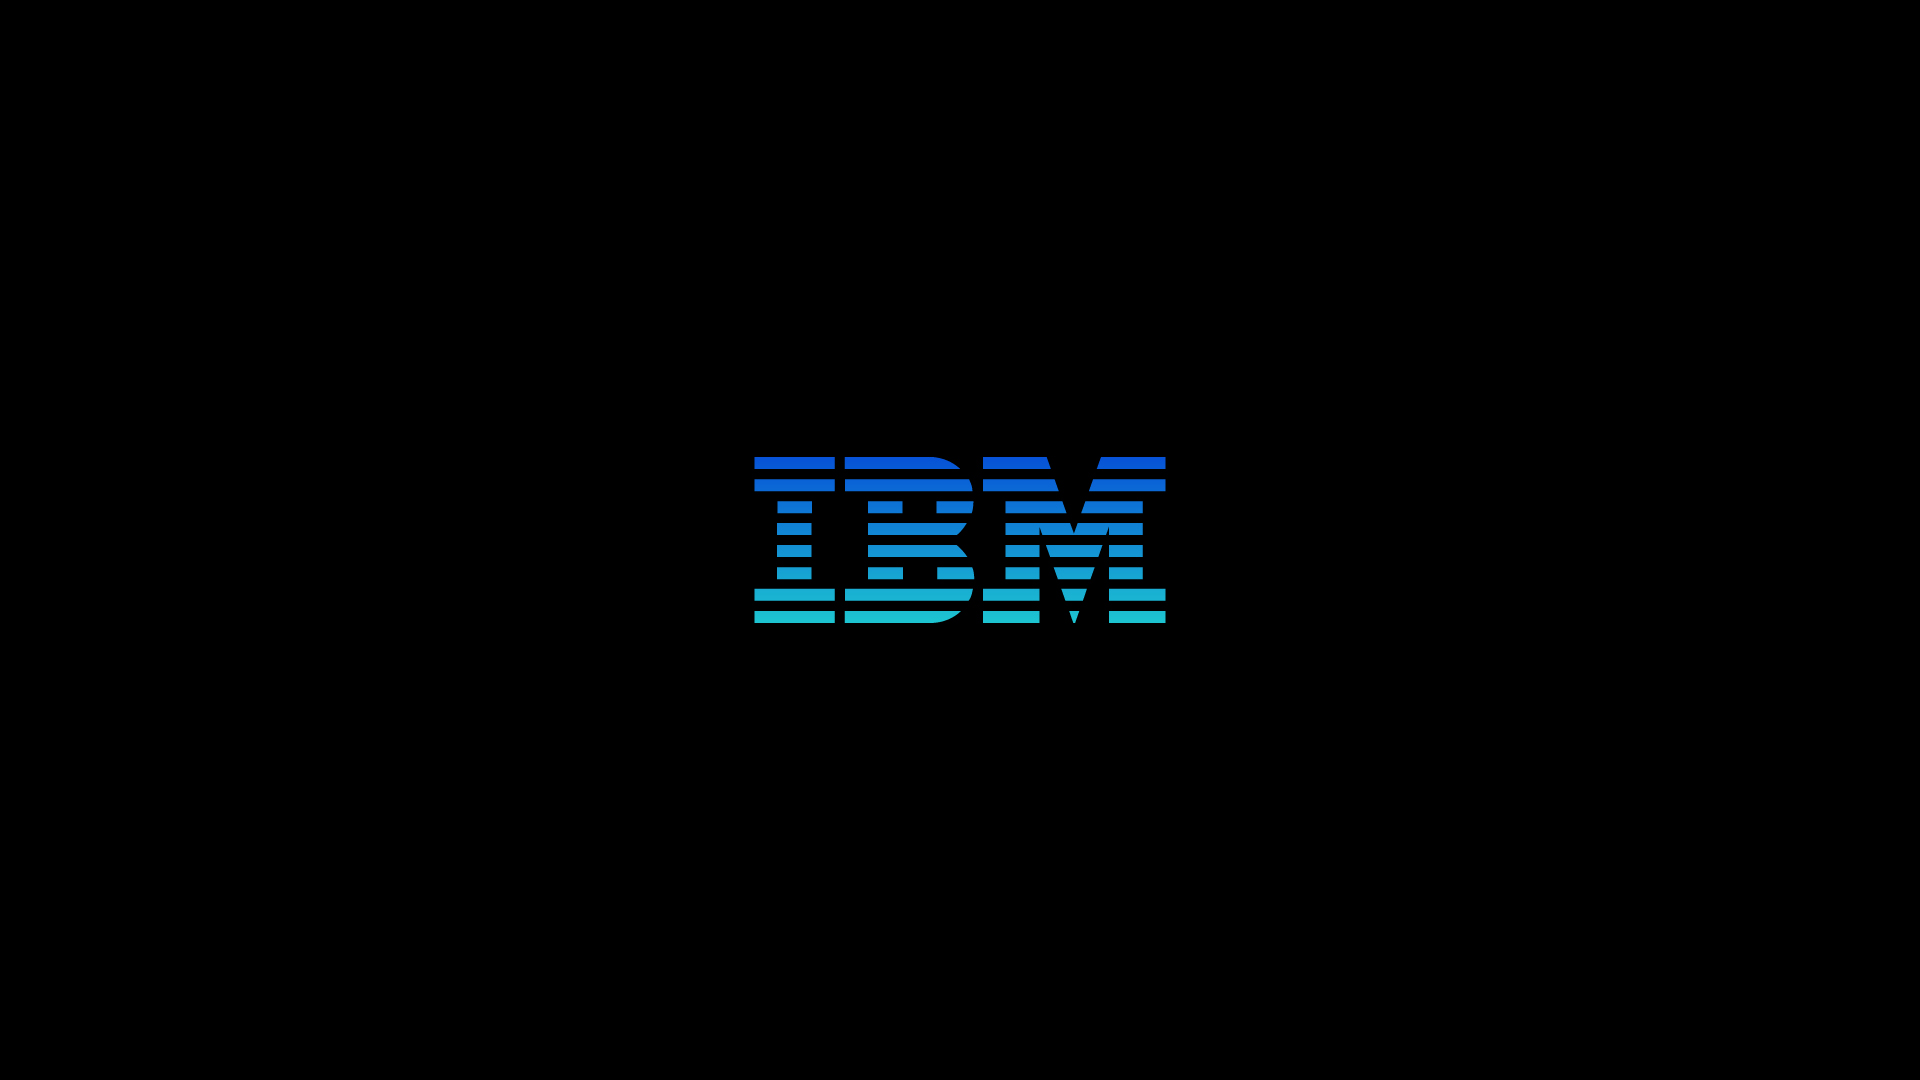 IBM_SHAPE-YOUR-CLOUD_DC_EDITS_BH_IBM-26